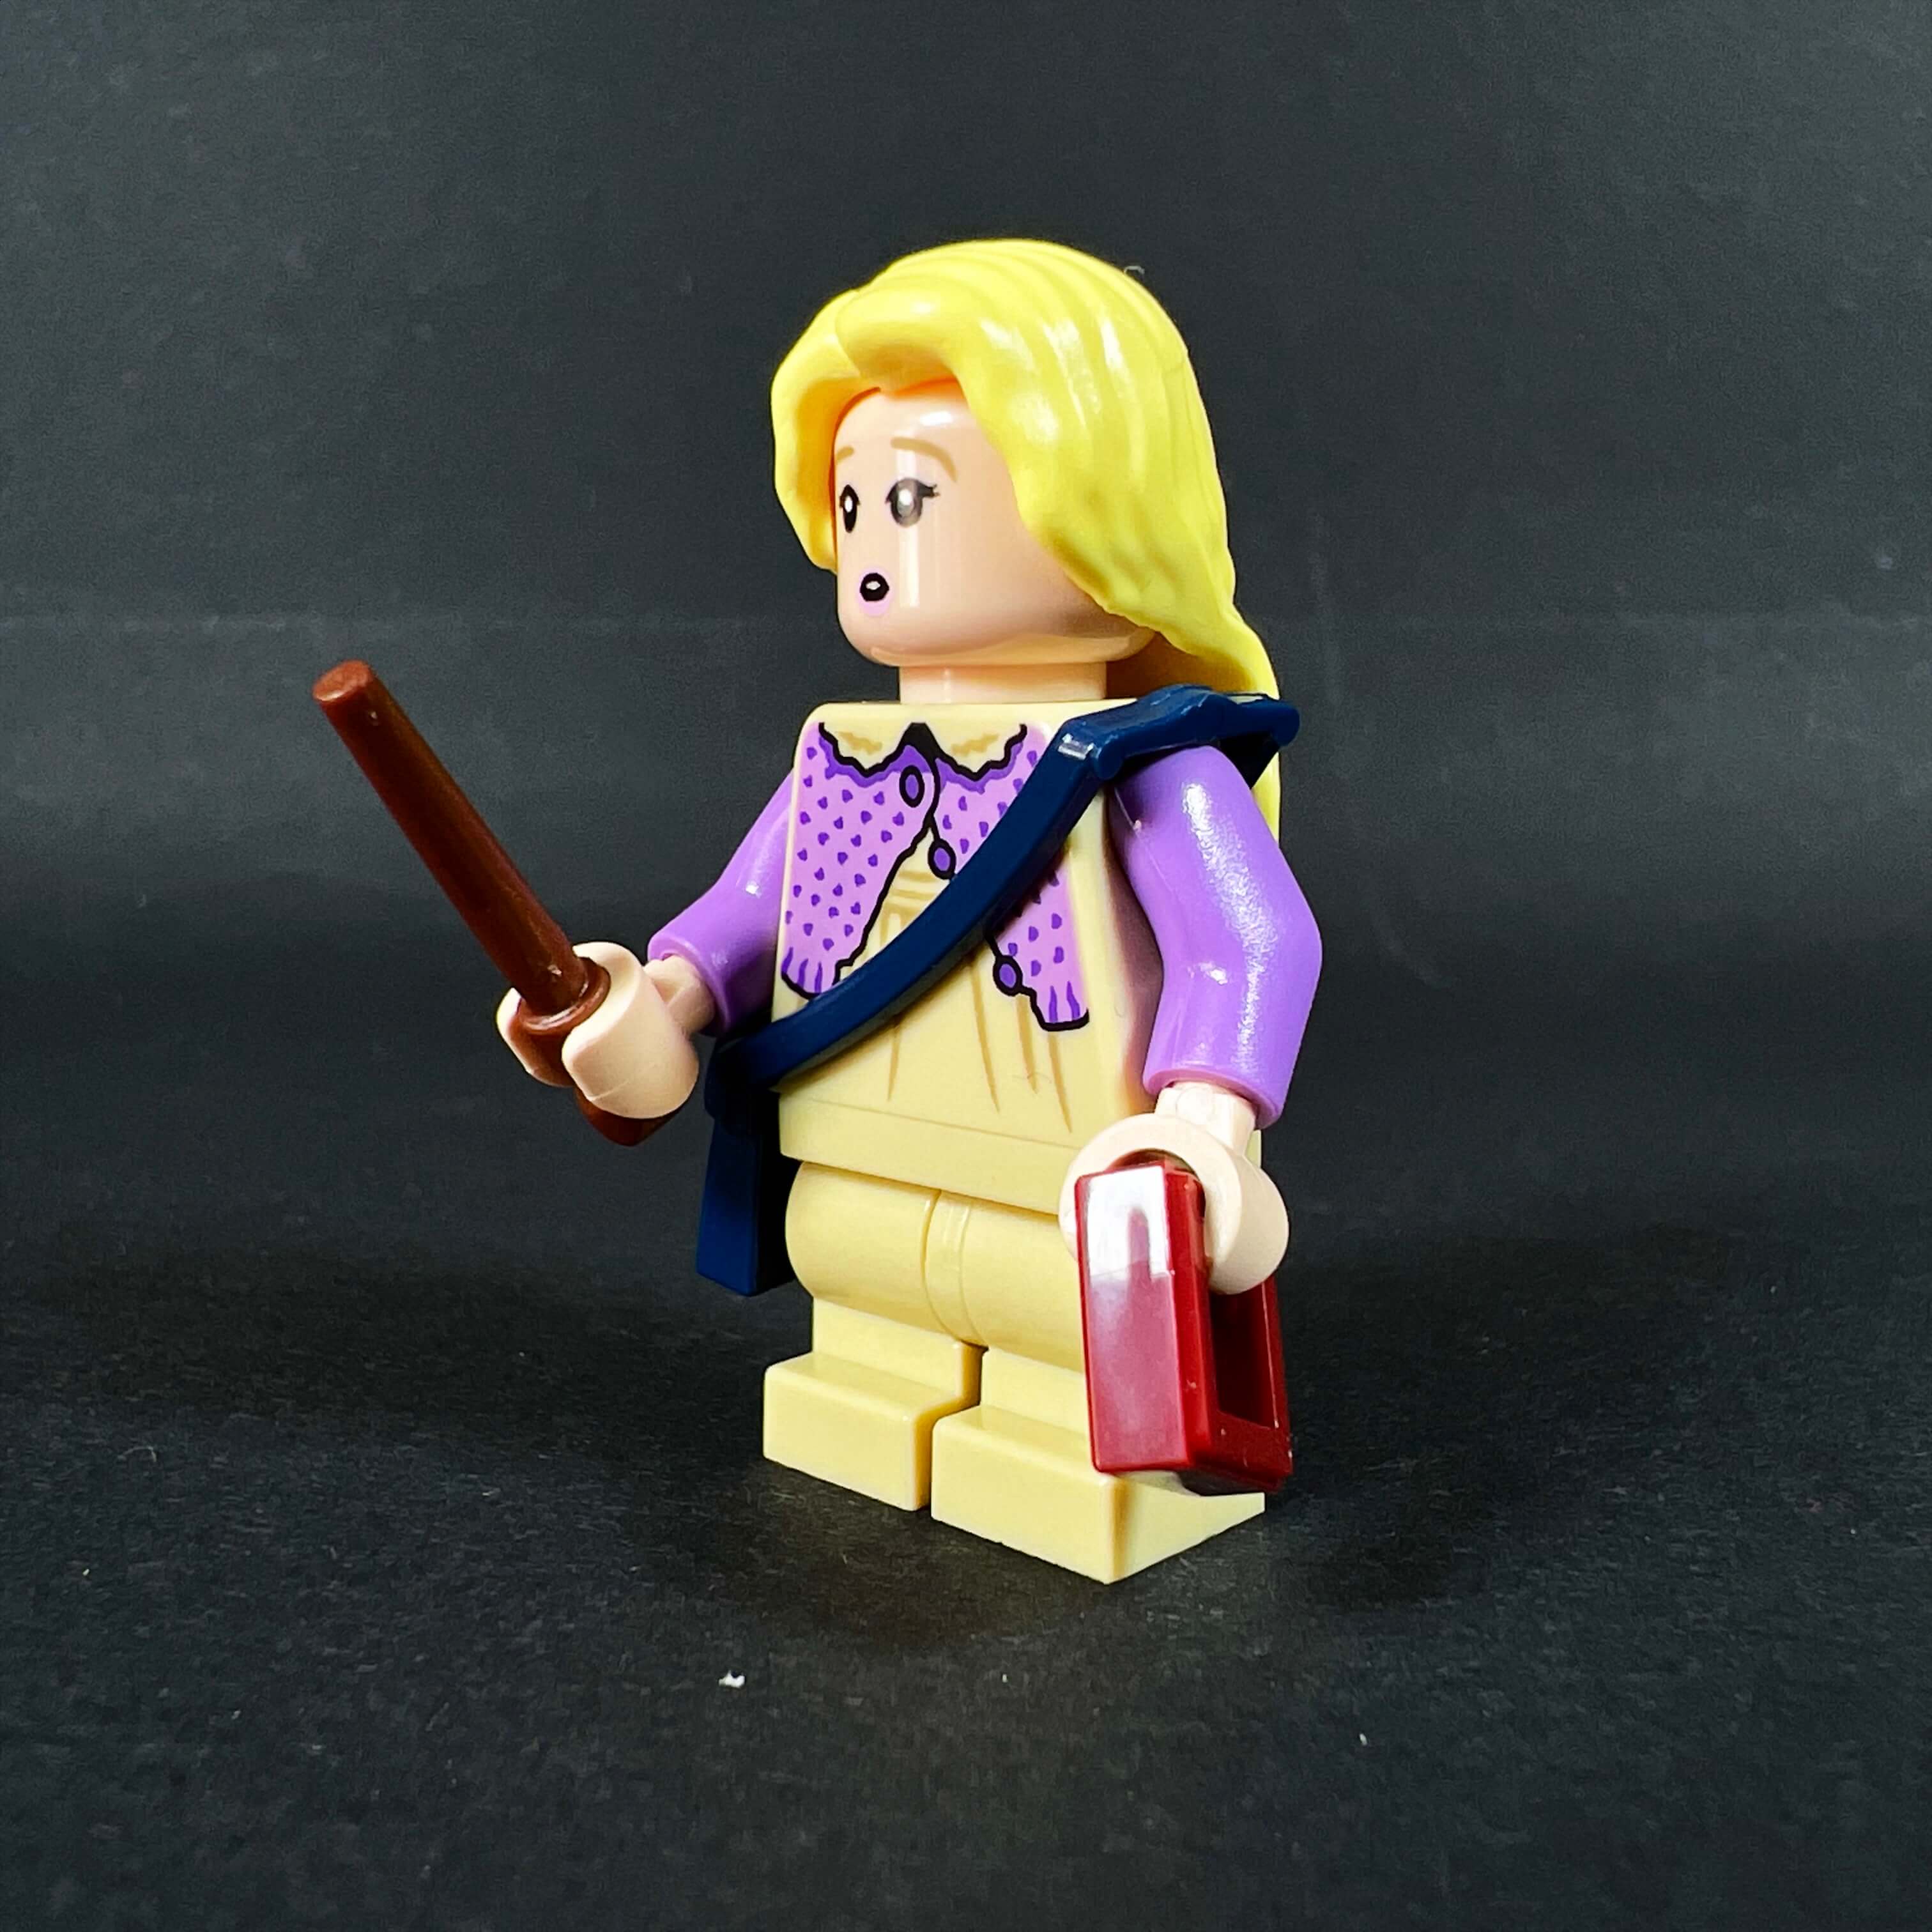 Jeu de construction Lego Harry Potter (76400) - La Diligence et Les  Sombrals de Poudlard –